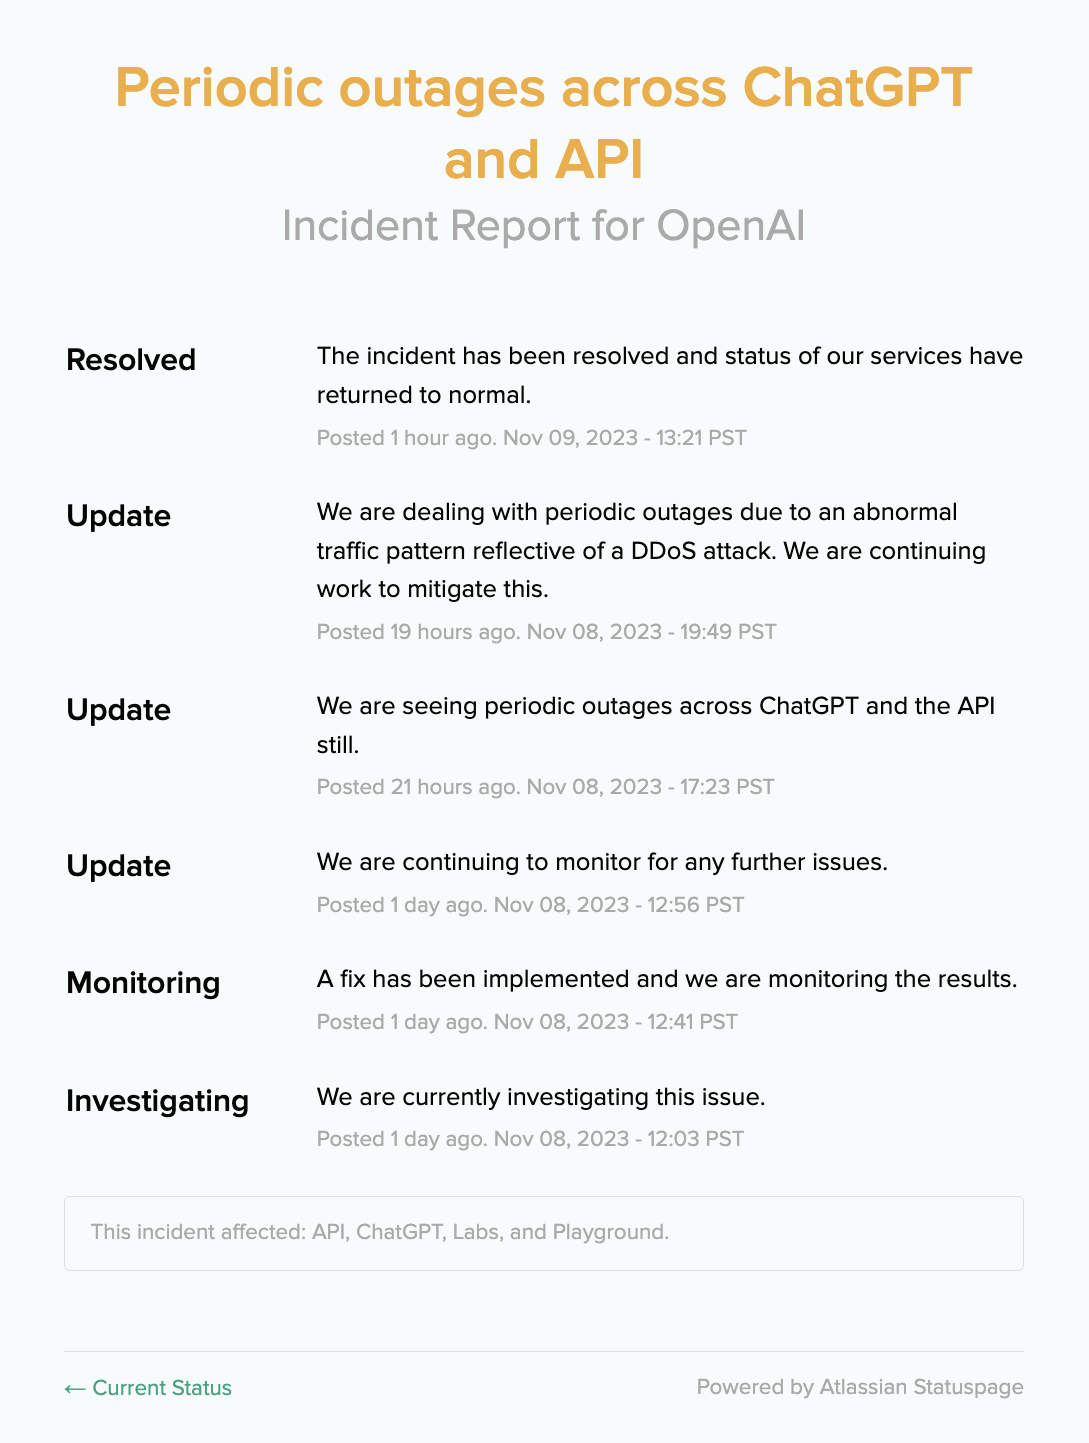 OpenAI behebt regelmäßige ChatGPT- und API-Ausfälle, die durch DDoS-Angriffe verursacht werden